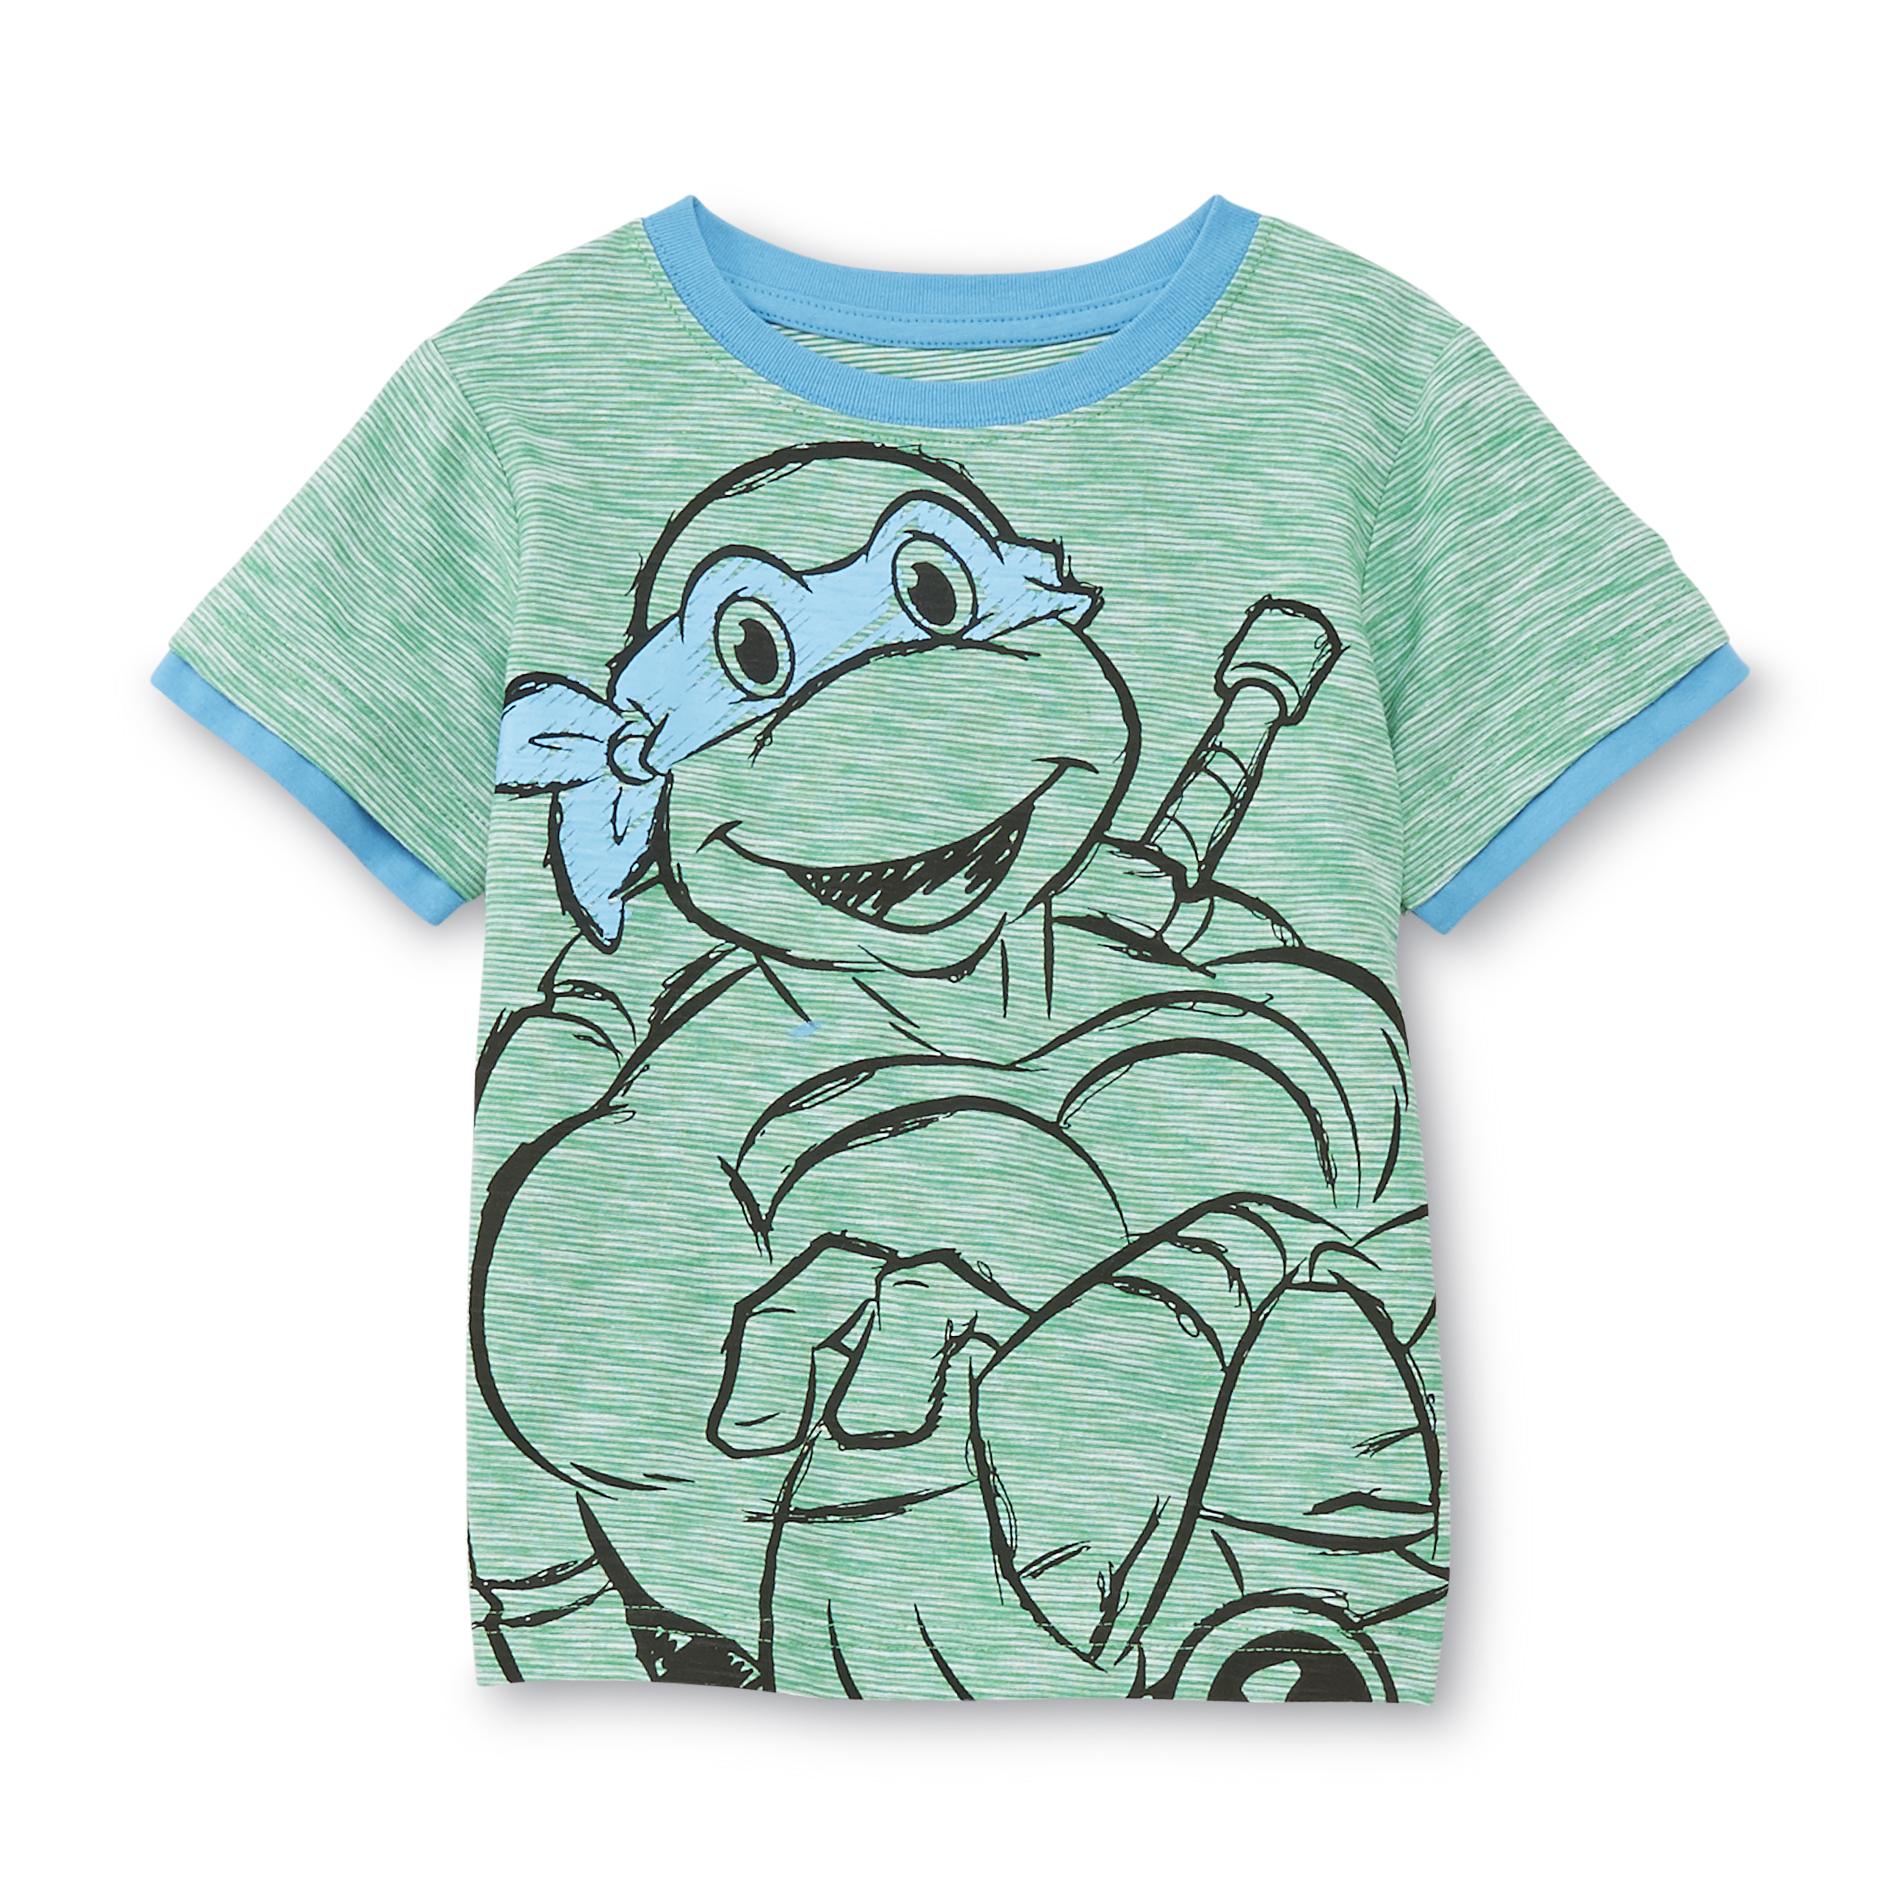 Nickelodeon Teenage Mutant Ninja Turtles Toddler Boy's Graphic T-Shirt - Leonardo